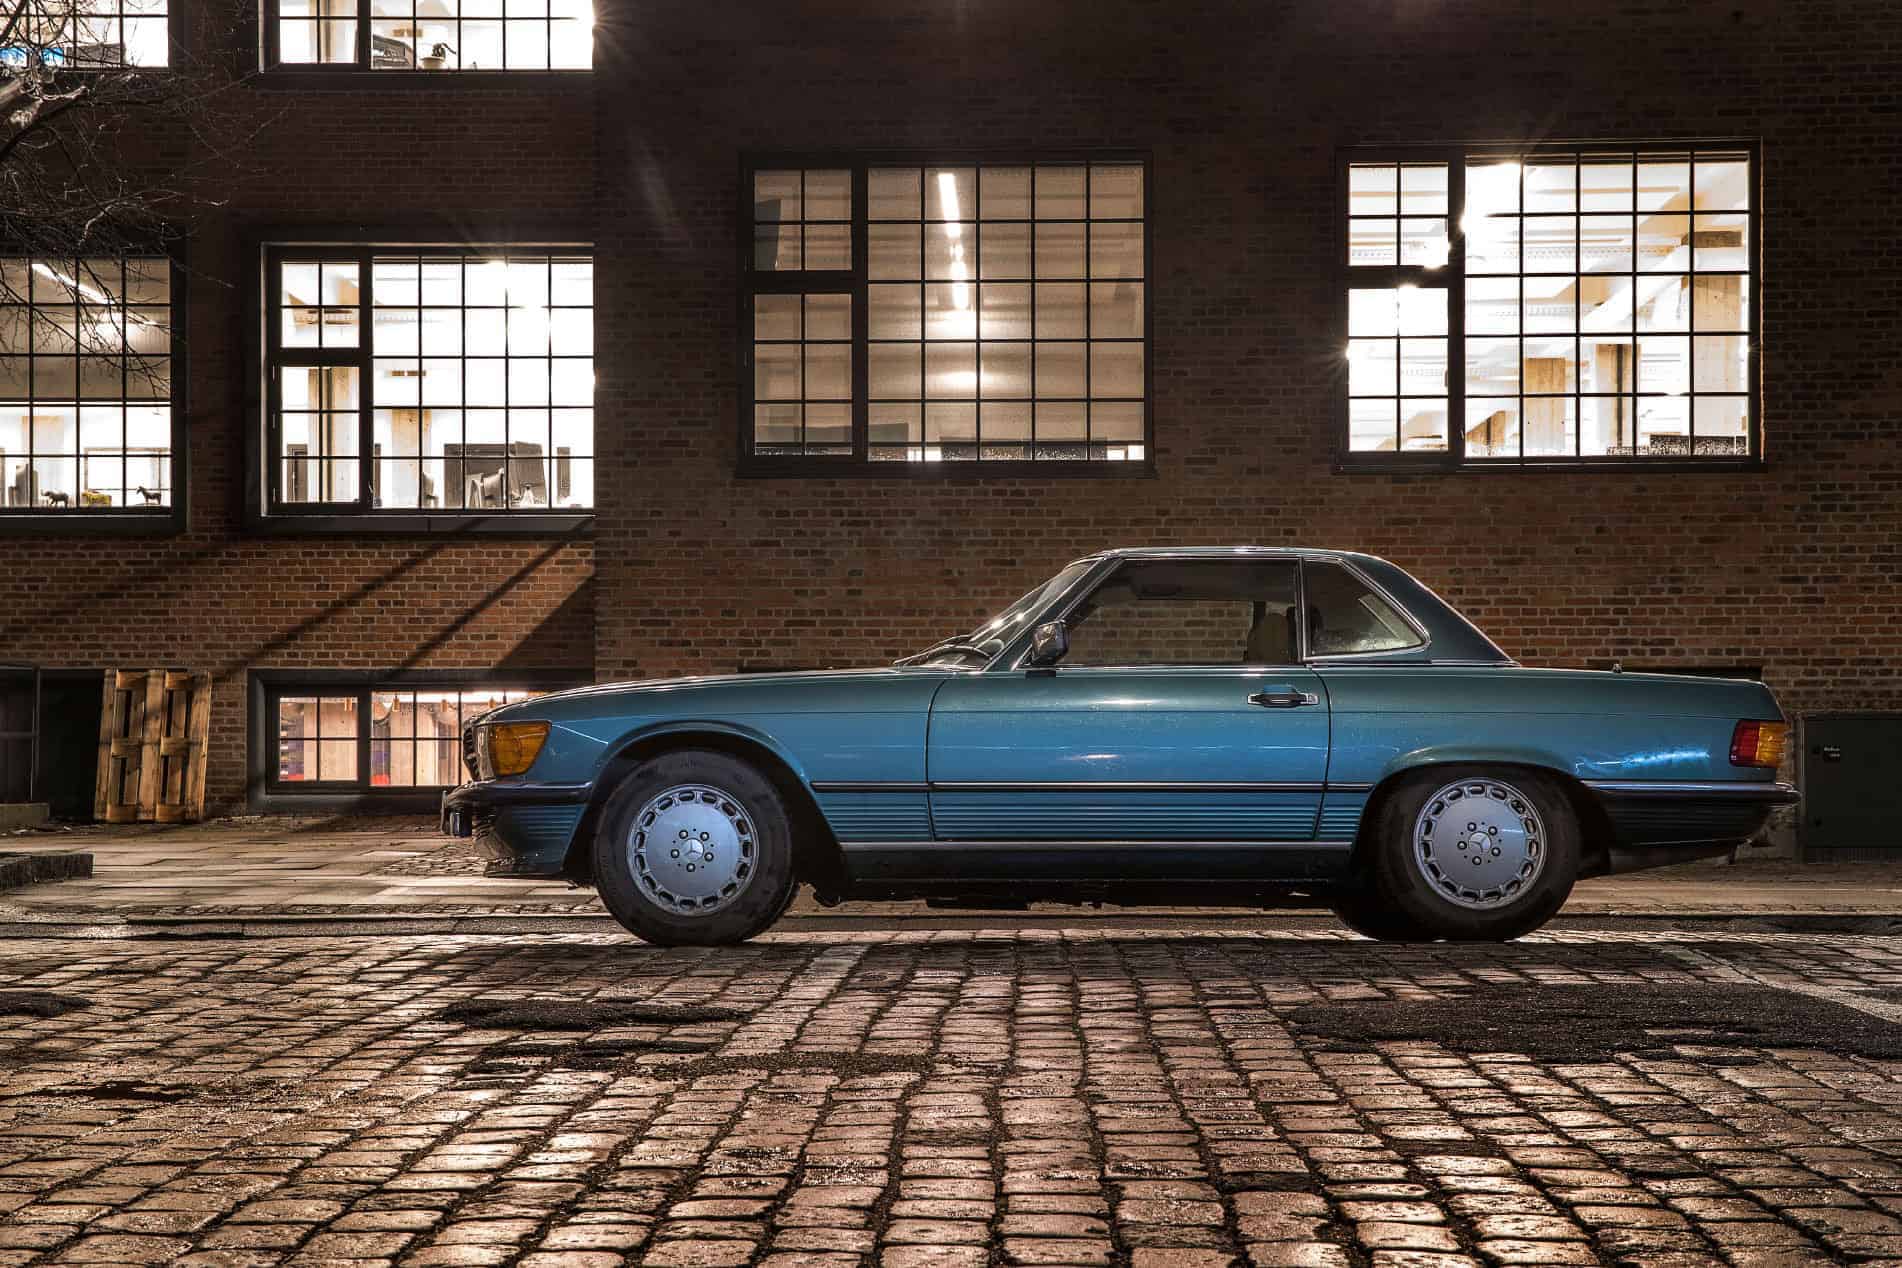 A classic 1980s Mercedes in urban Europe.